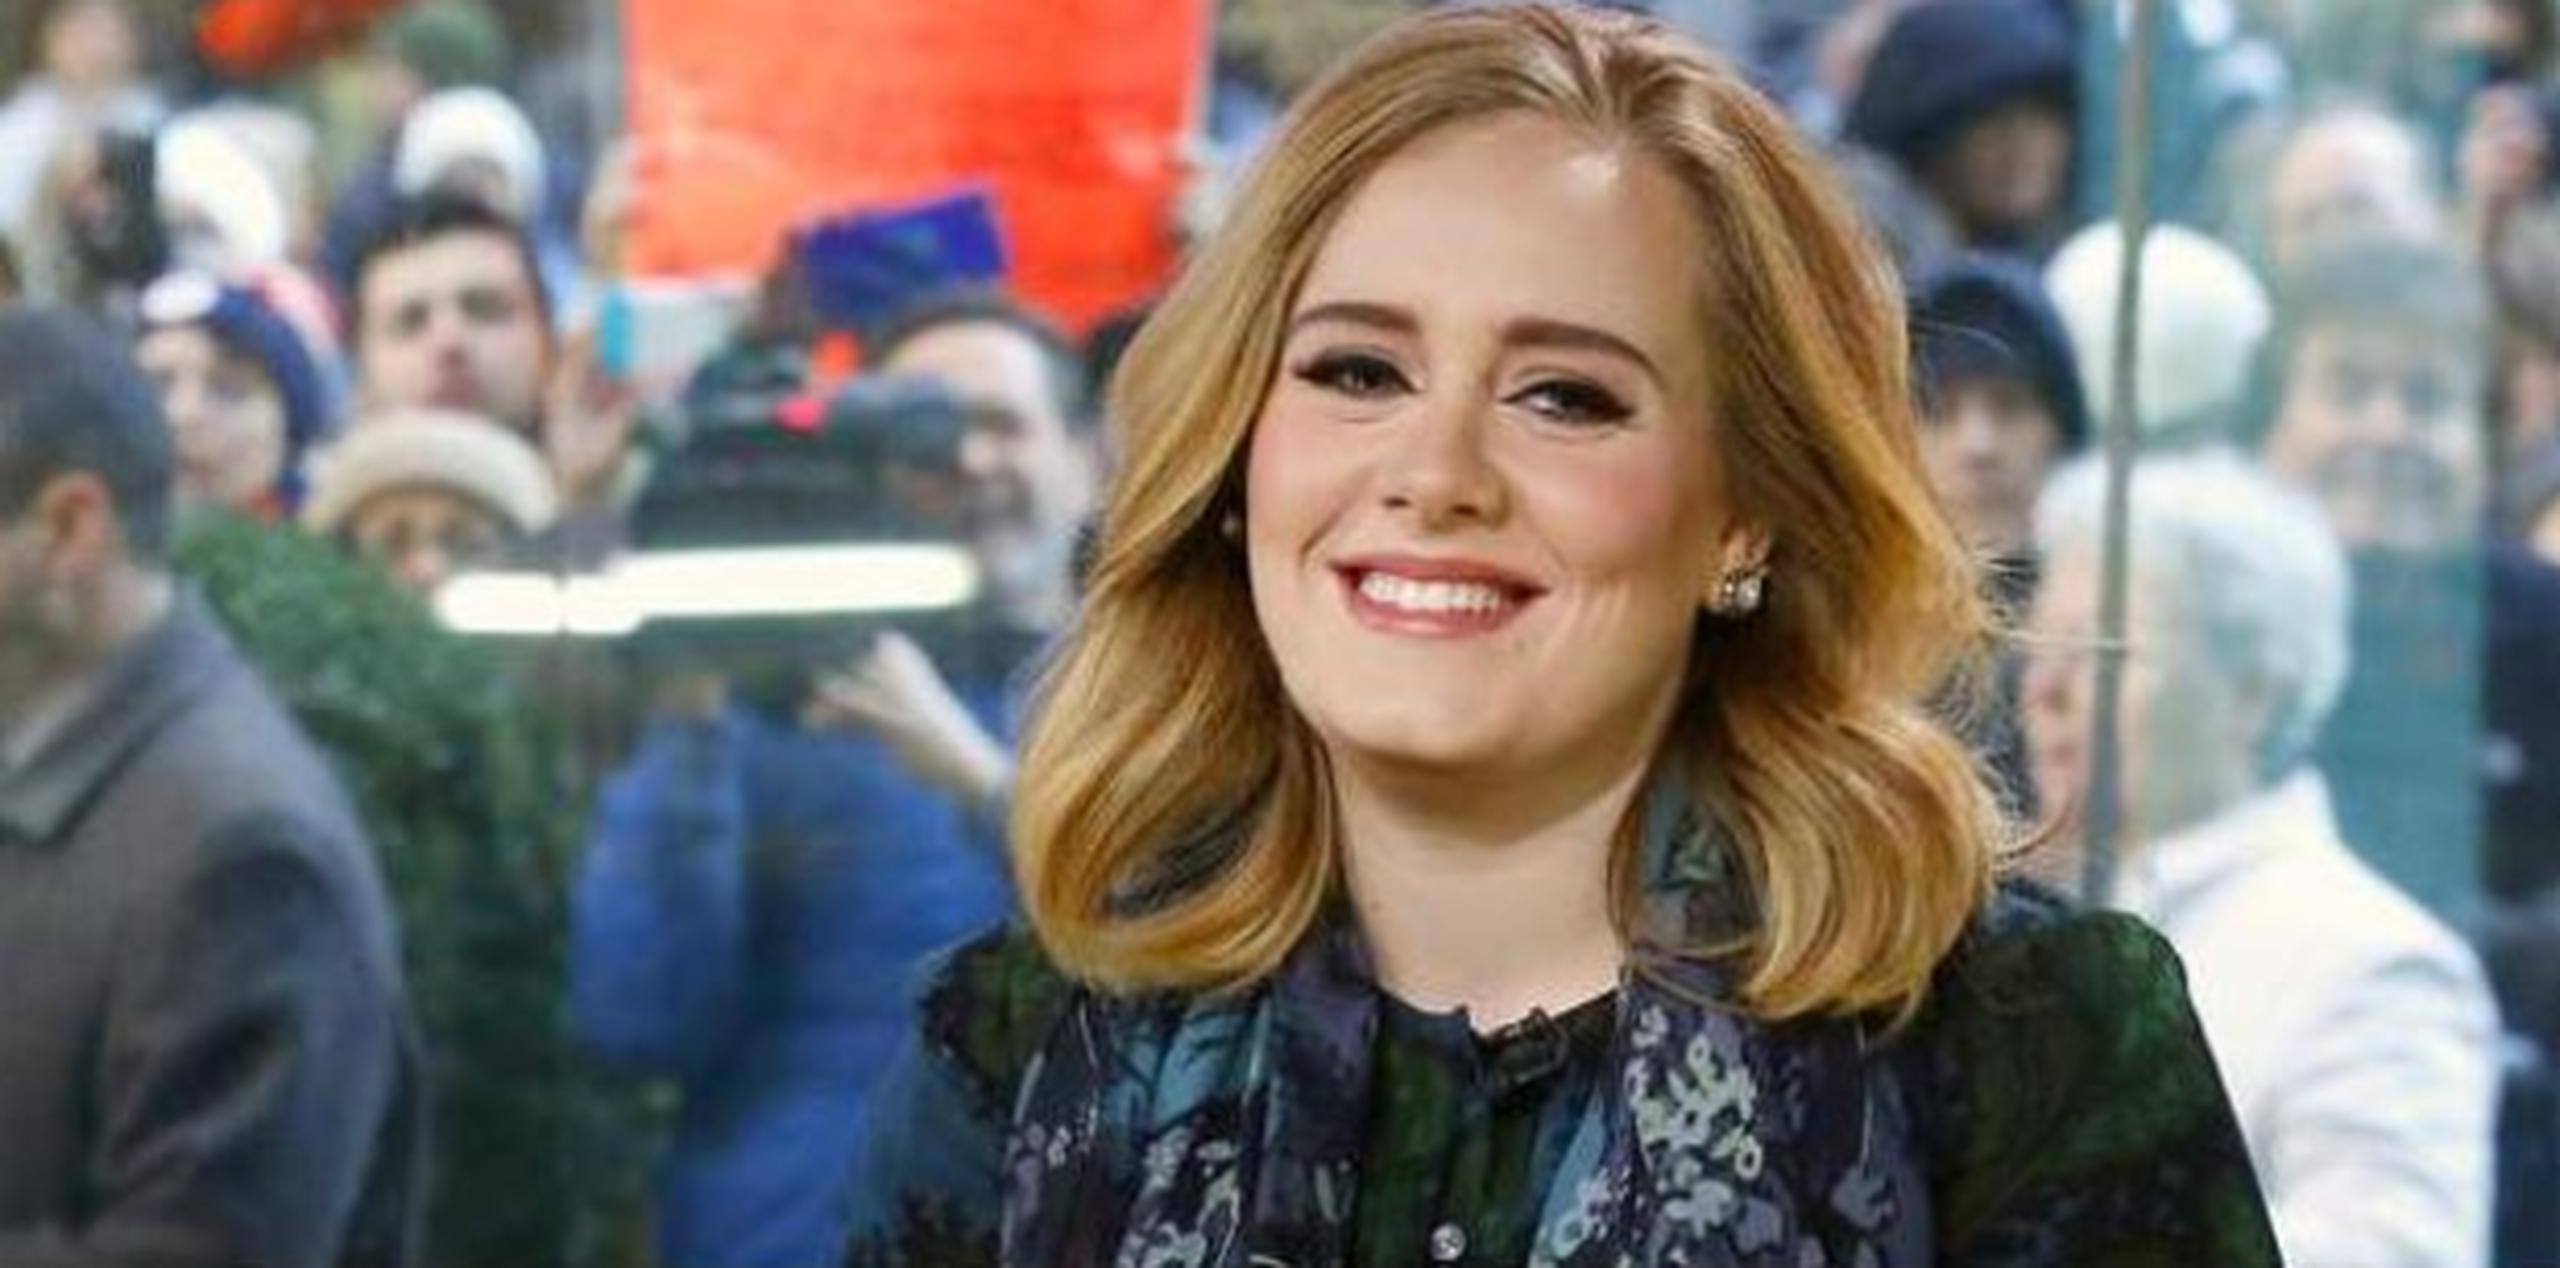 En otra oportunidad, Adele también olvidó la letra de "Rolling in the Deep", lo cual ella misma resaltó con una mala palabra. (Archivo)